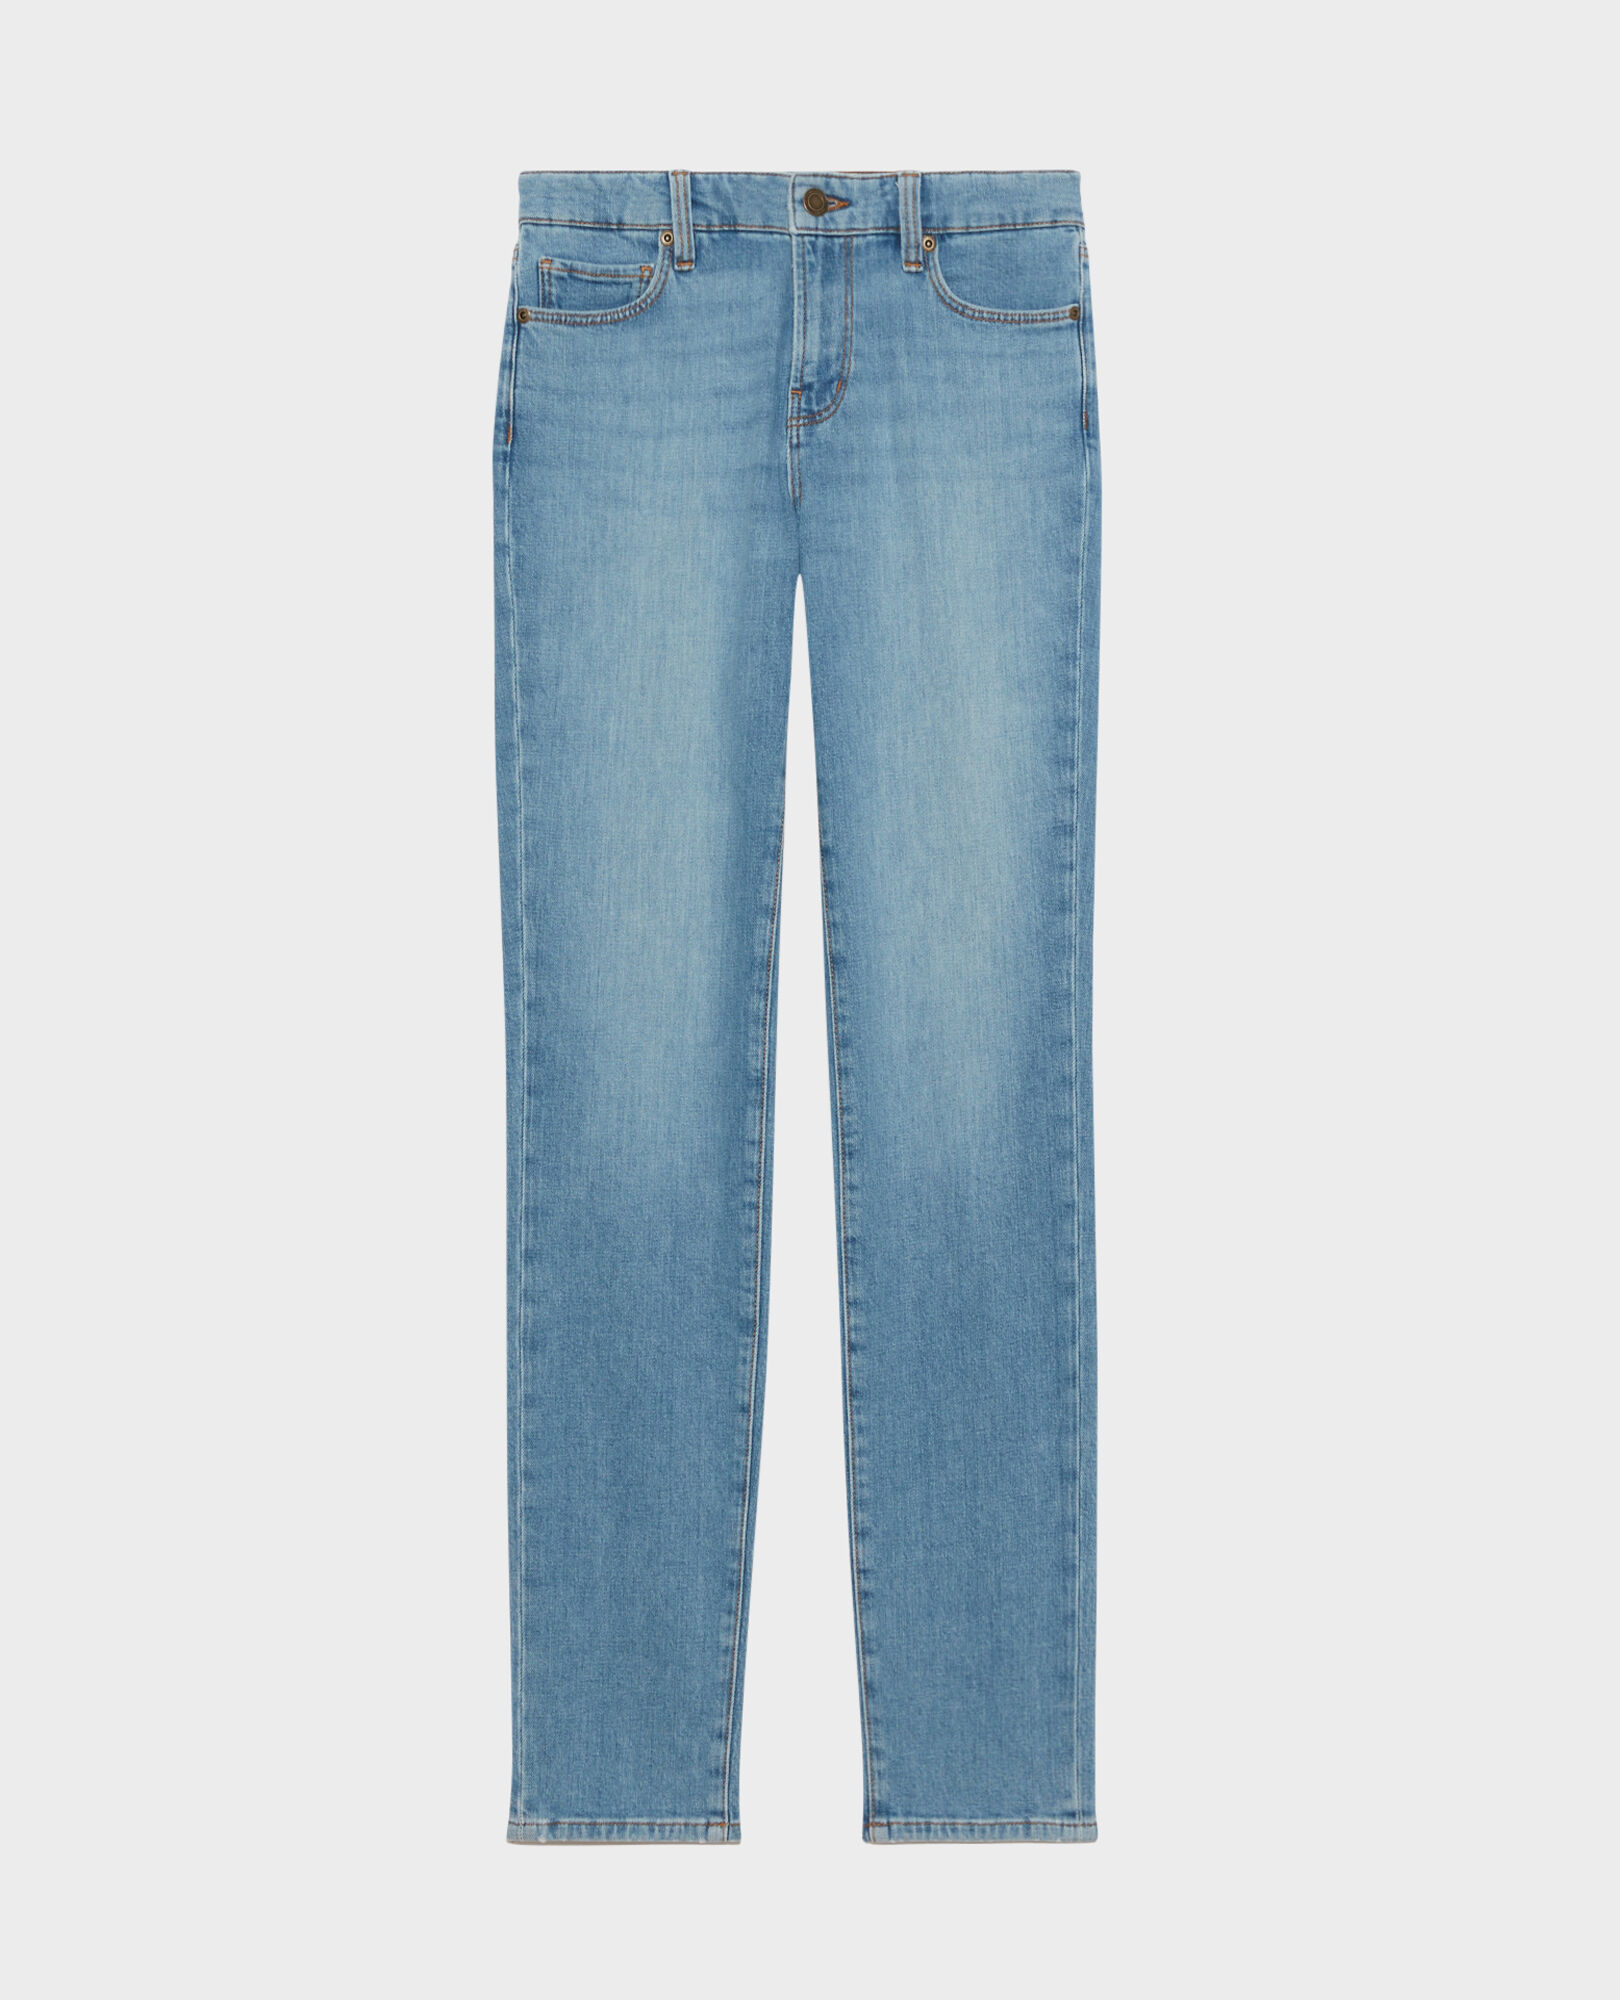 LILI - SLIM - 5 pocket jeans Denim medium wash Pandra